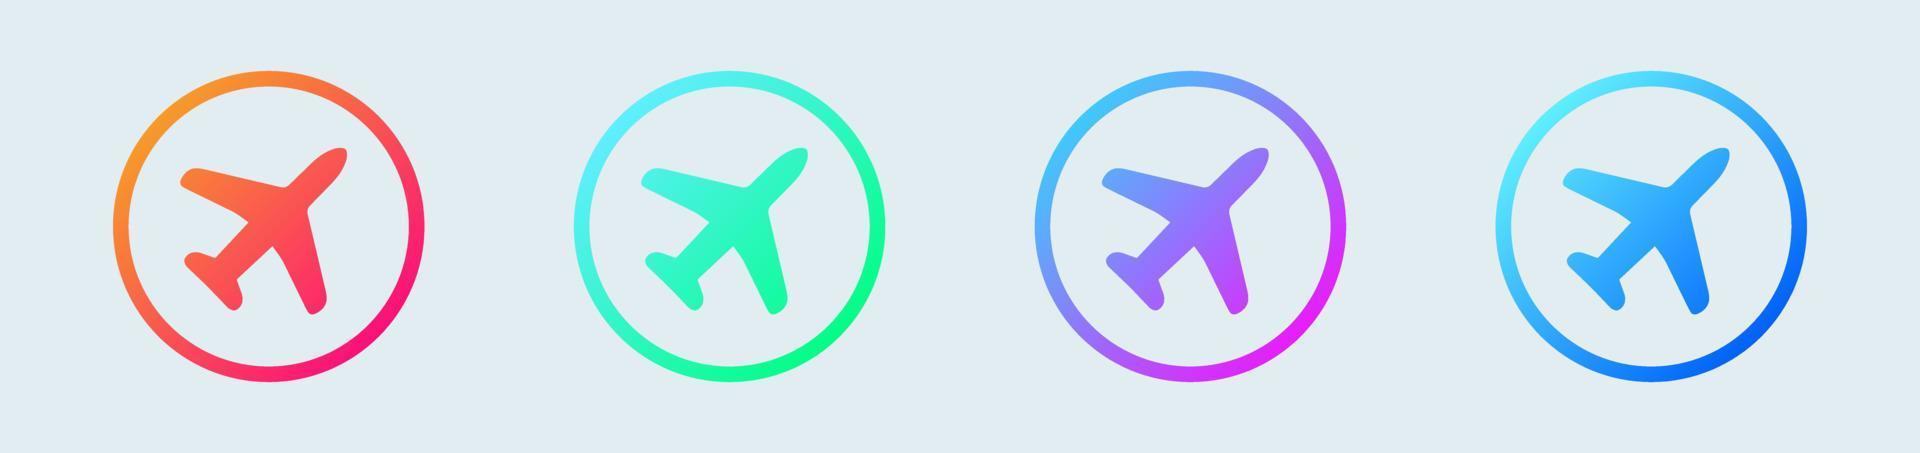 Flugtransportsymbol. Flache Ikone der Flugzeugluftfahrt für Apps und Websites. vektor